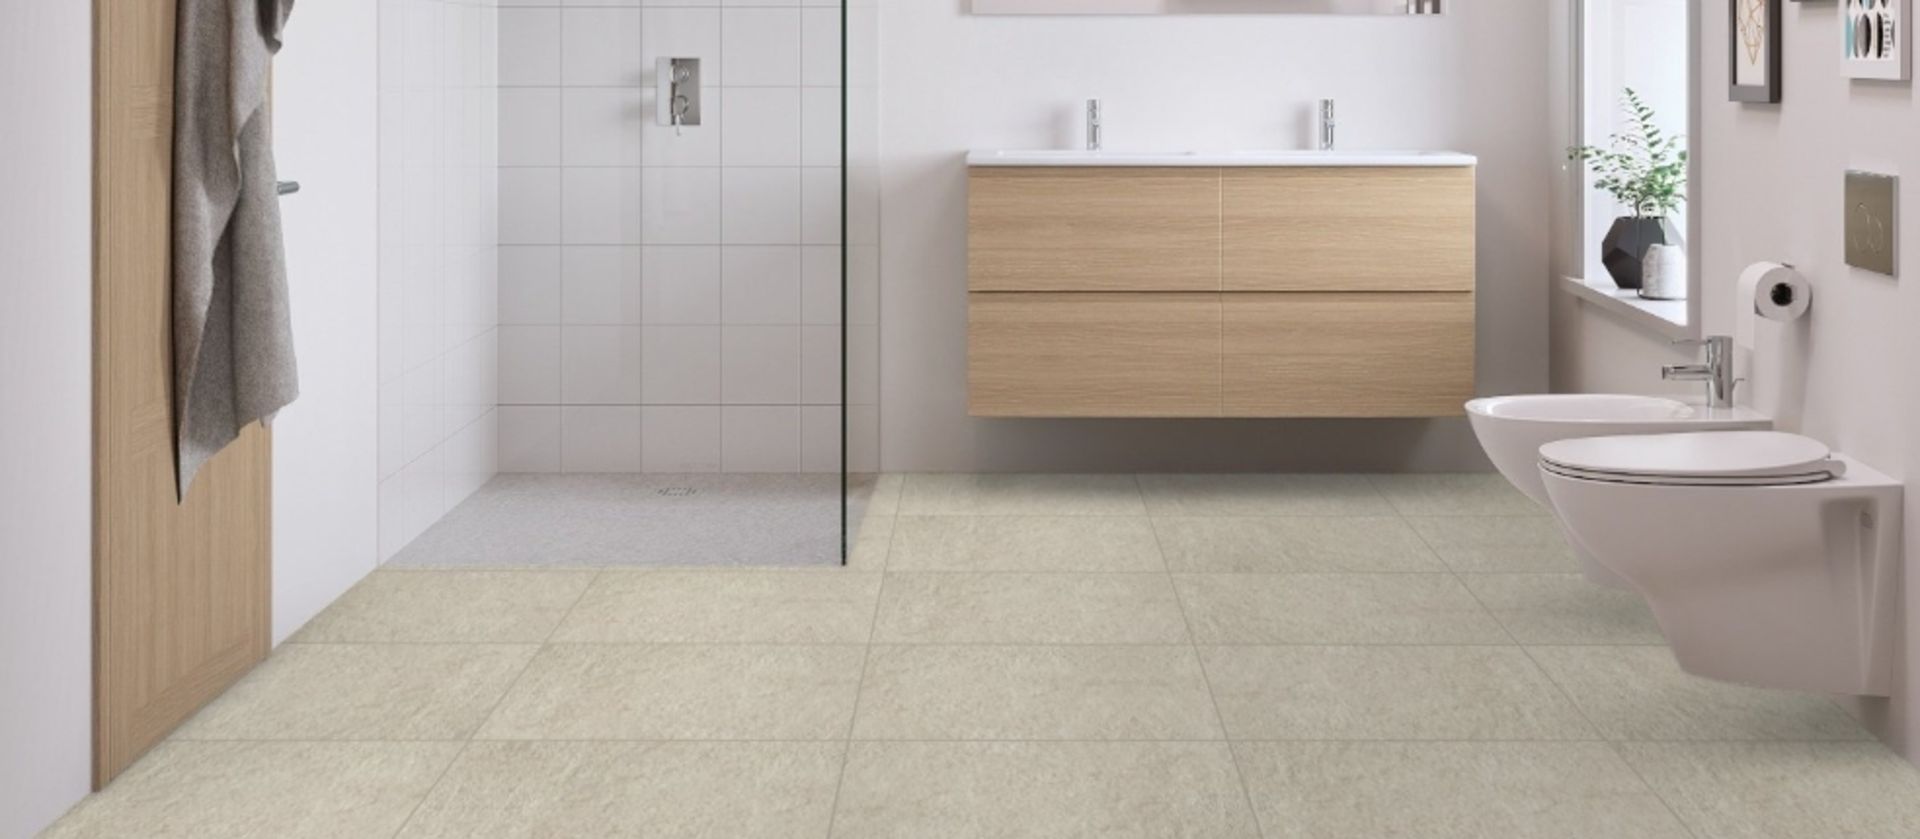 12 x Boxes of RAK Porcelain Tiles - Design Concrete Range - Sand Colour Matt Finish - Size: 120x60cm - Image 6 of 12